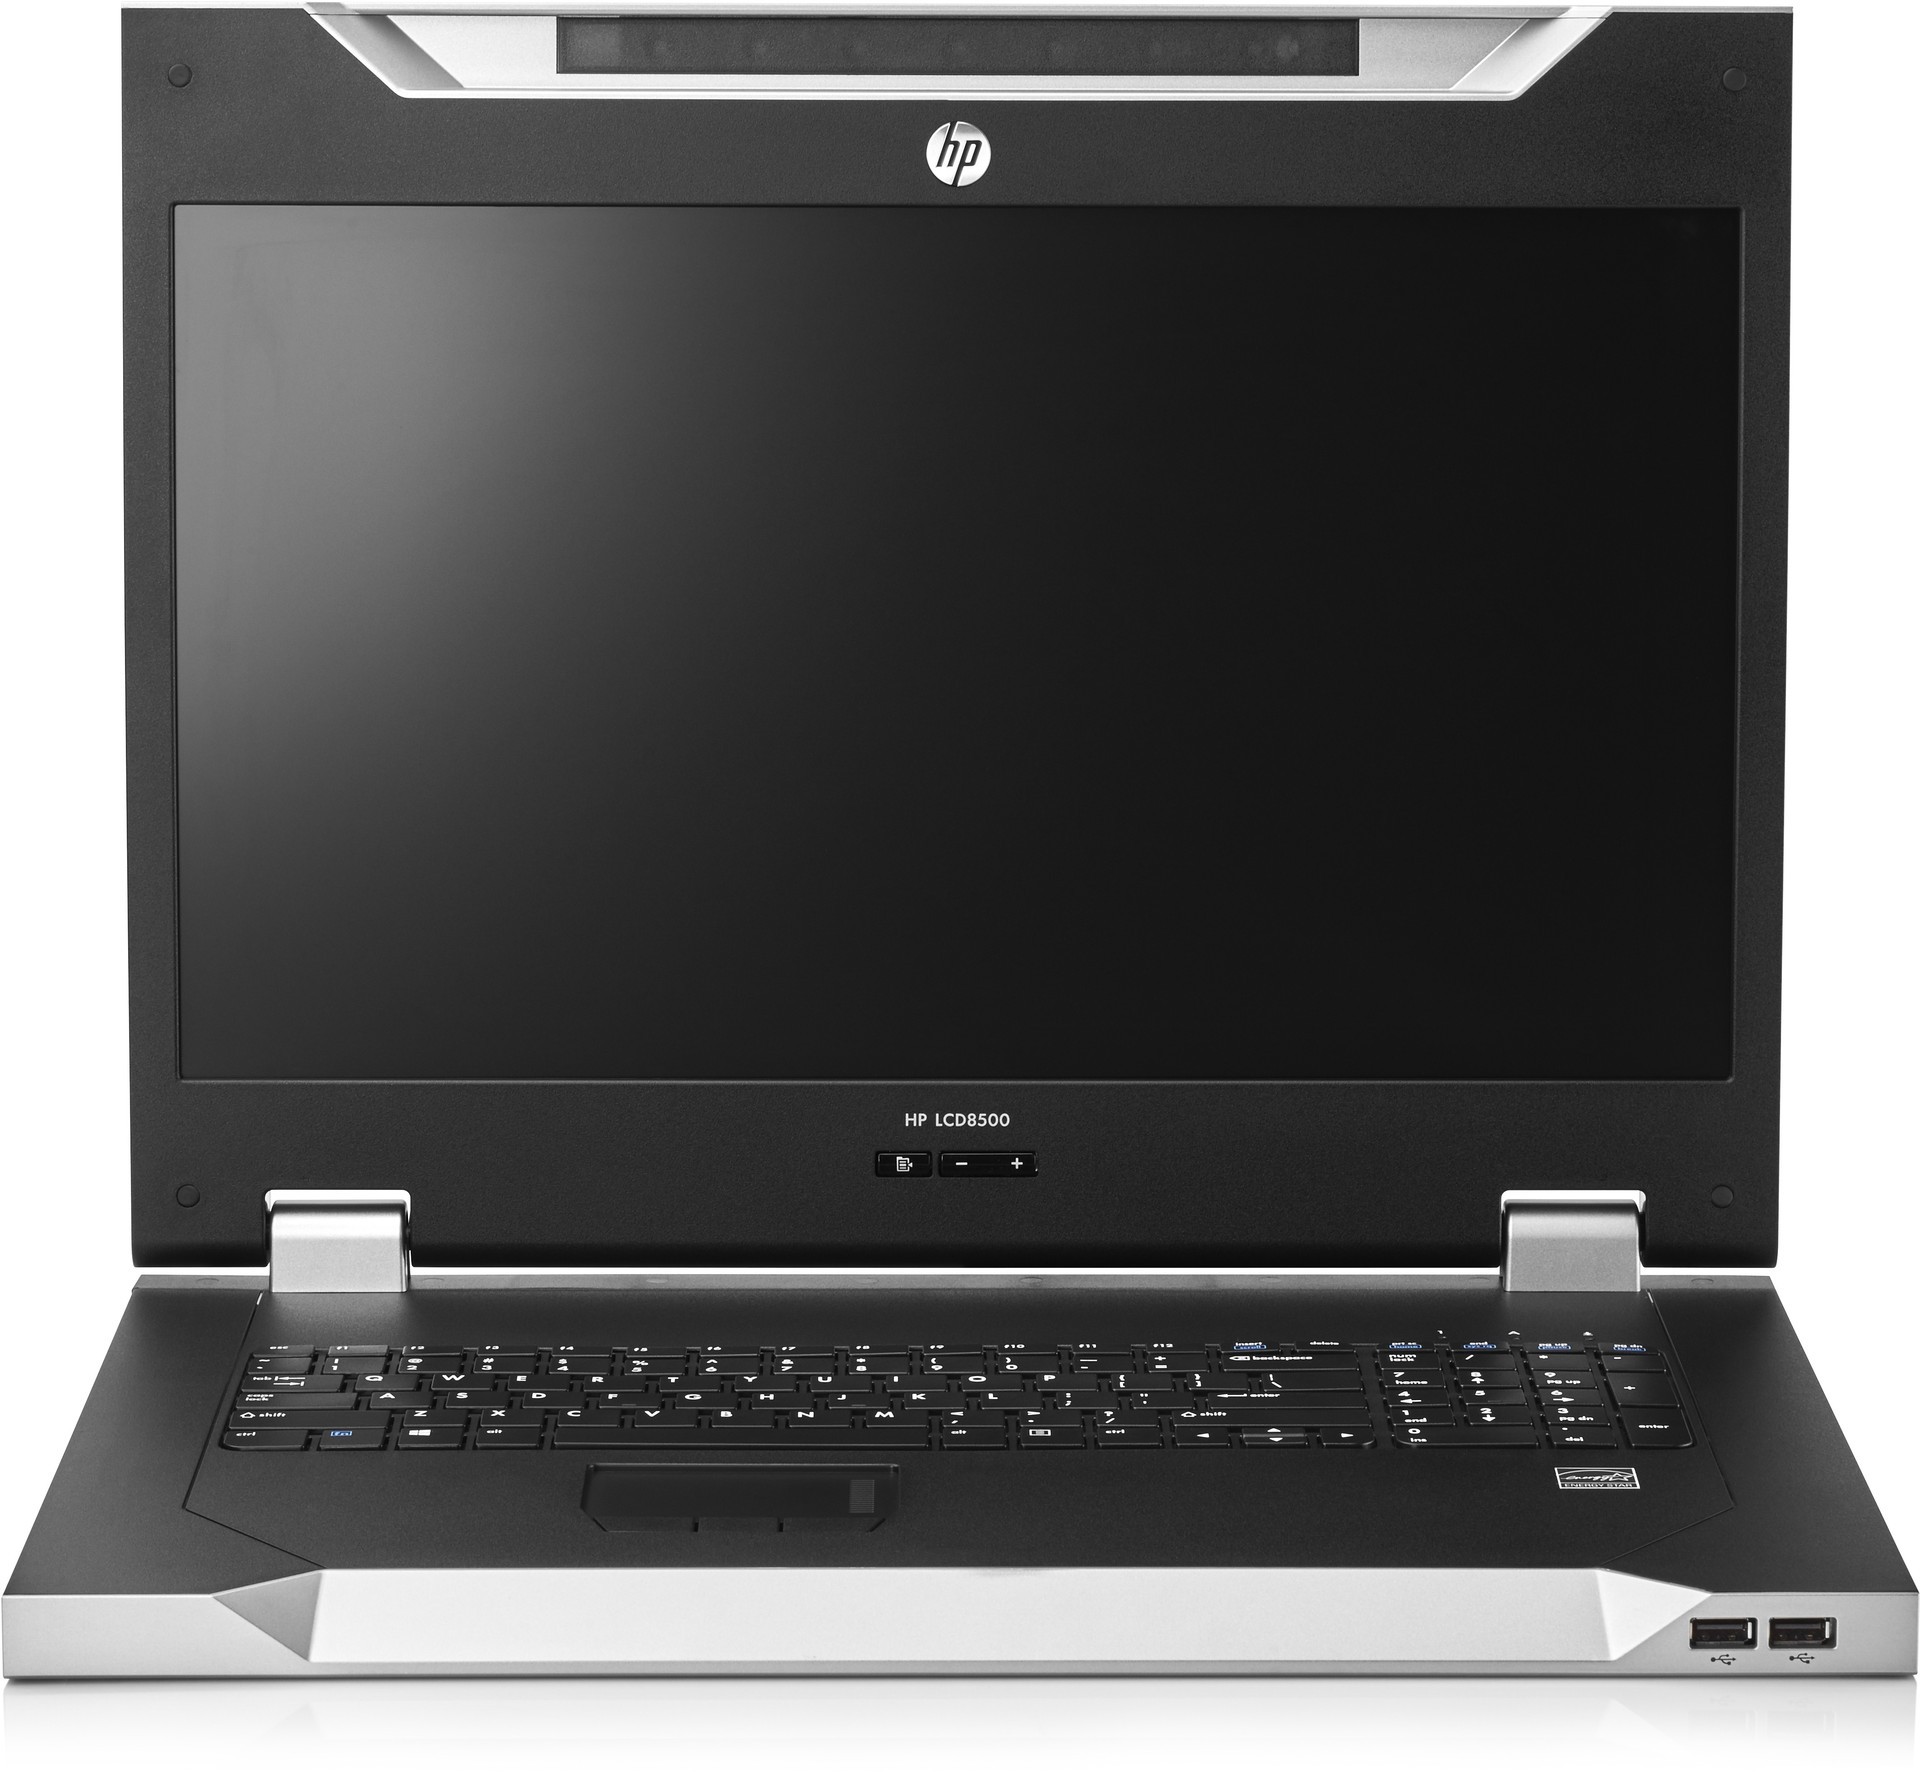 Монитор ж/к AF643A 18,5" с клавиатурой без цифровых разъемов HP TFT 8500 1U/RU Rackmount Console Kit